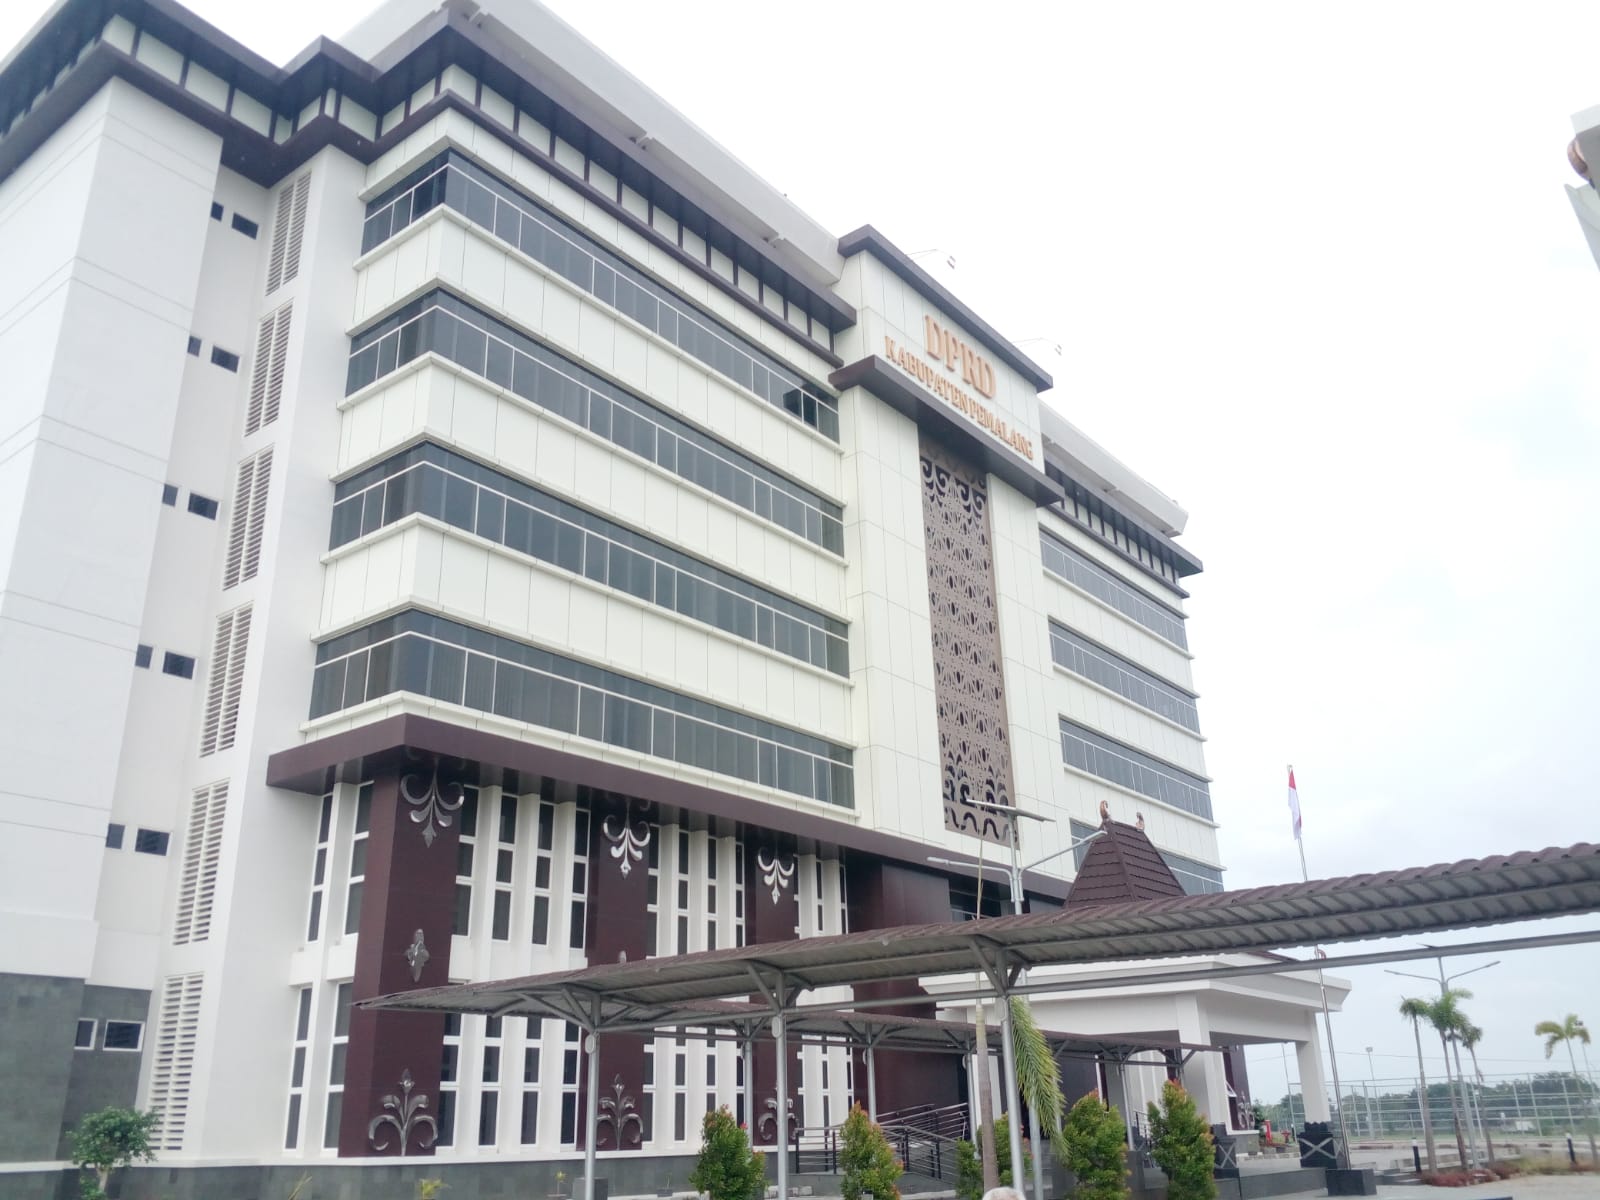 DPRD Kabupaten Pemalang Boyongan, Pindah dari Gedung Lama ke Gedung Baru